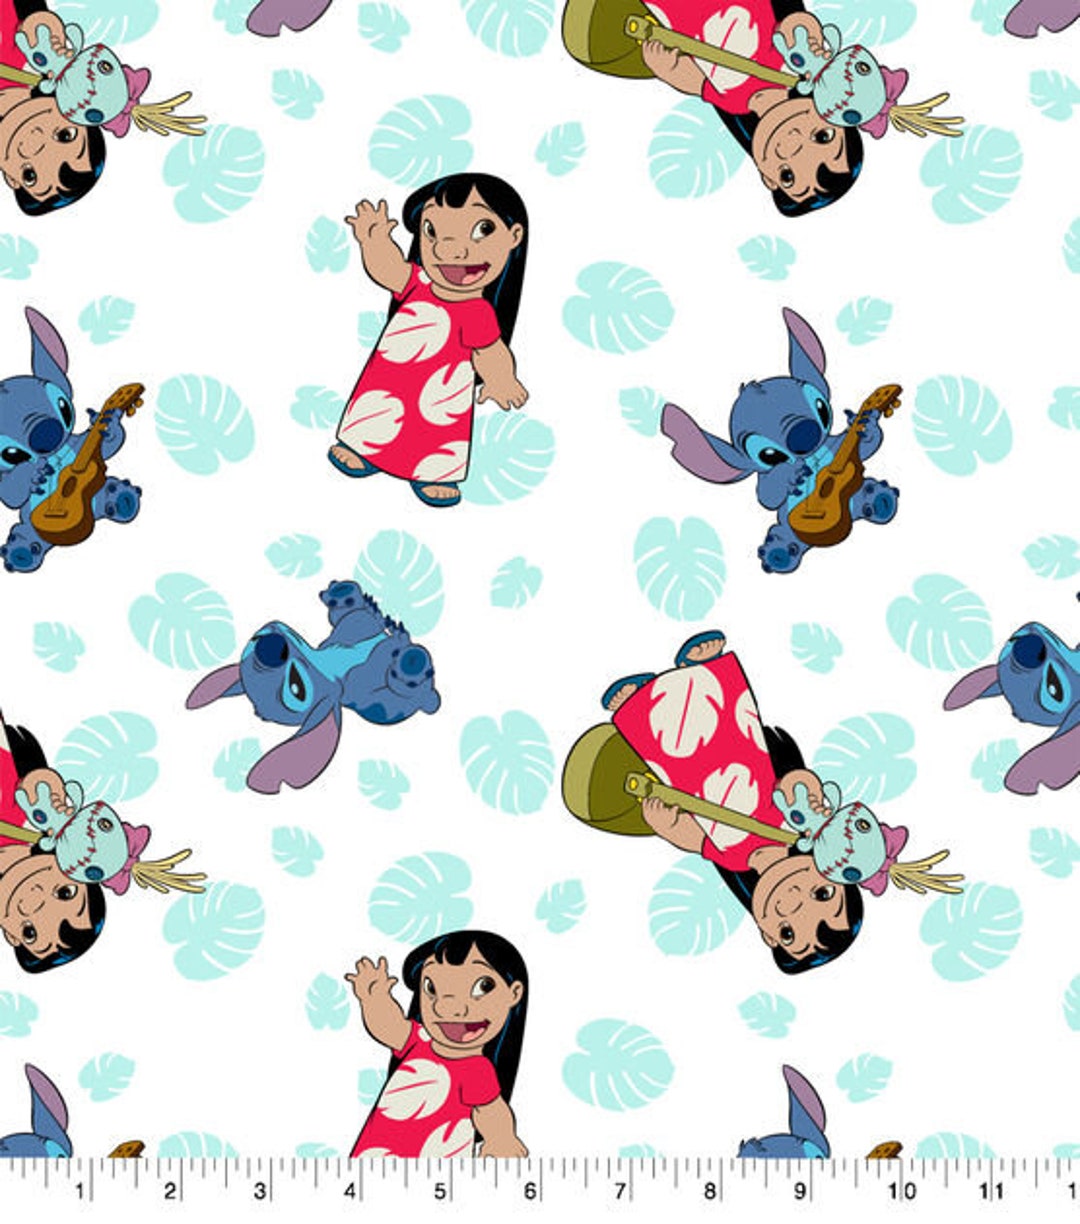 Disney Lilo & Stitch Biancheria da letto per bambini, Coperta per culla,  Lenzuolo per culla, Lenzuola per bambini, Coperta per bambini, Coperta per  bambini, Copertina per fasciatoio -  Italia